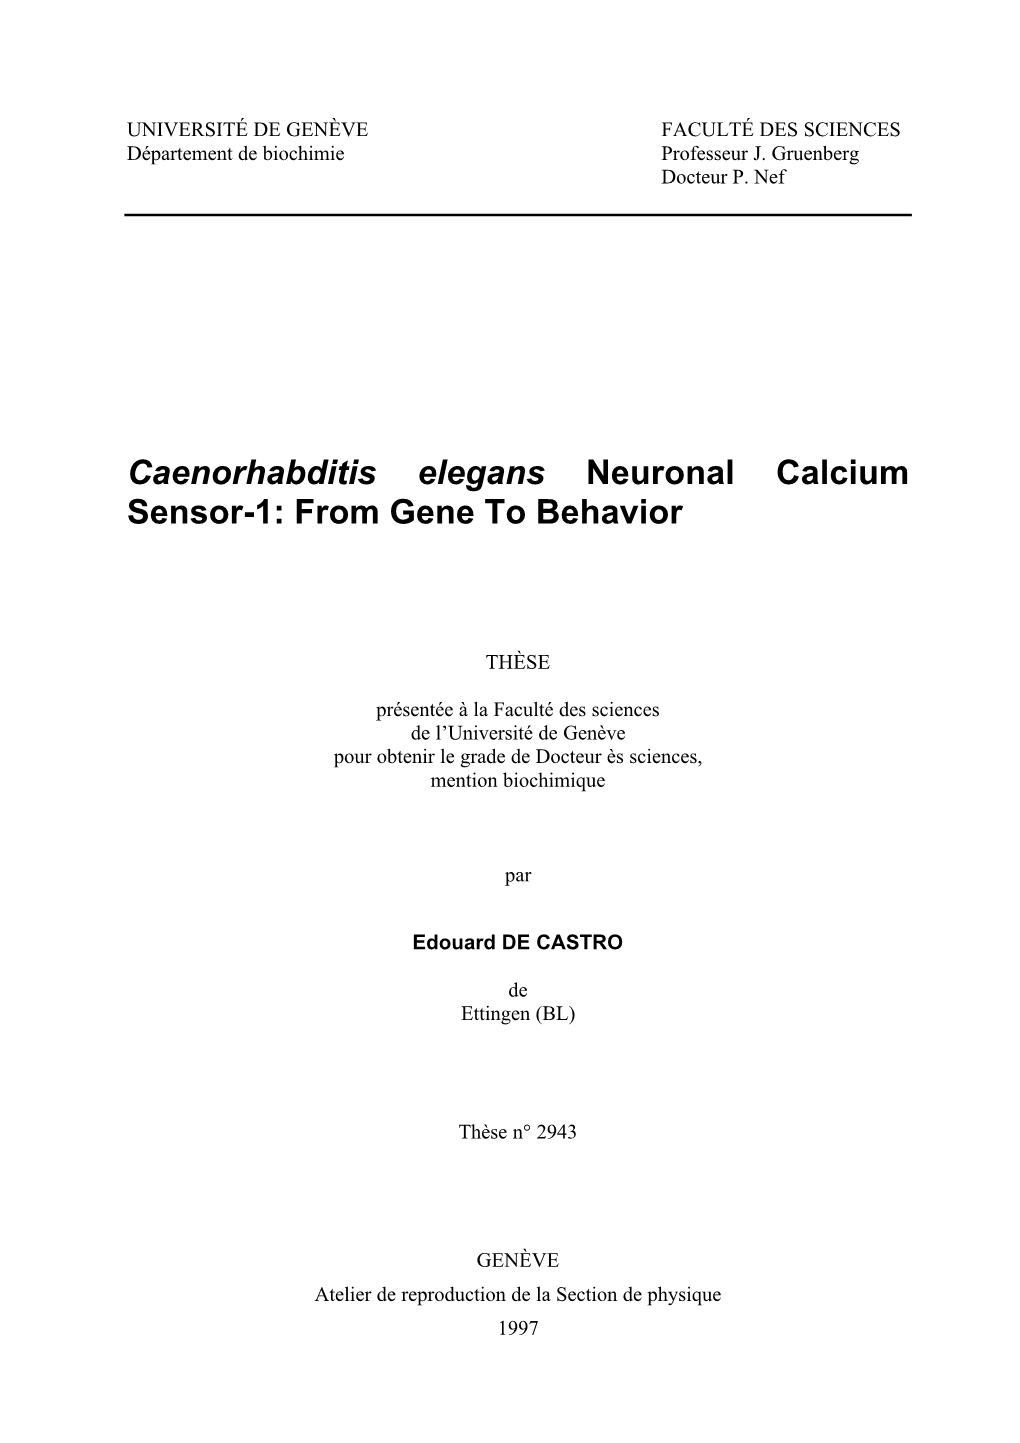 Caenorhabditis Elegans Neuronal Calcium Sensor-1: from Gene to Behavior